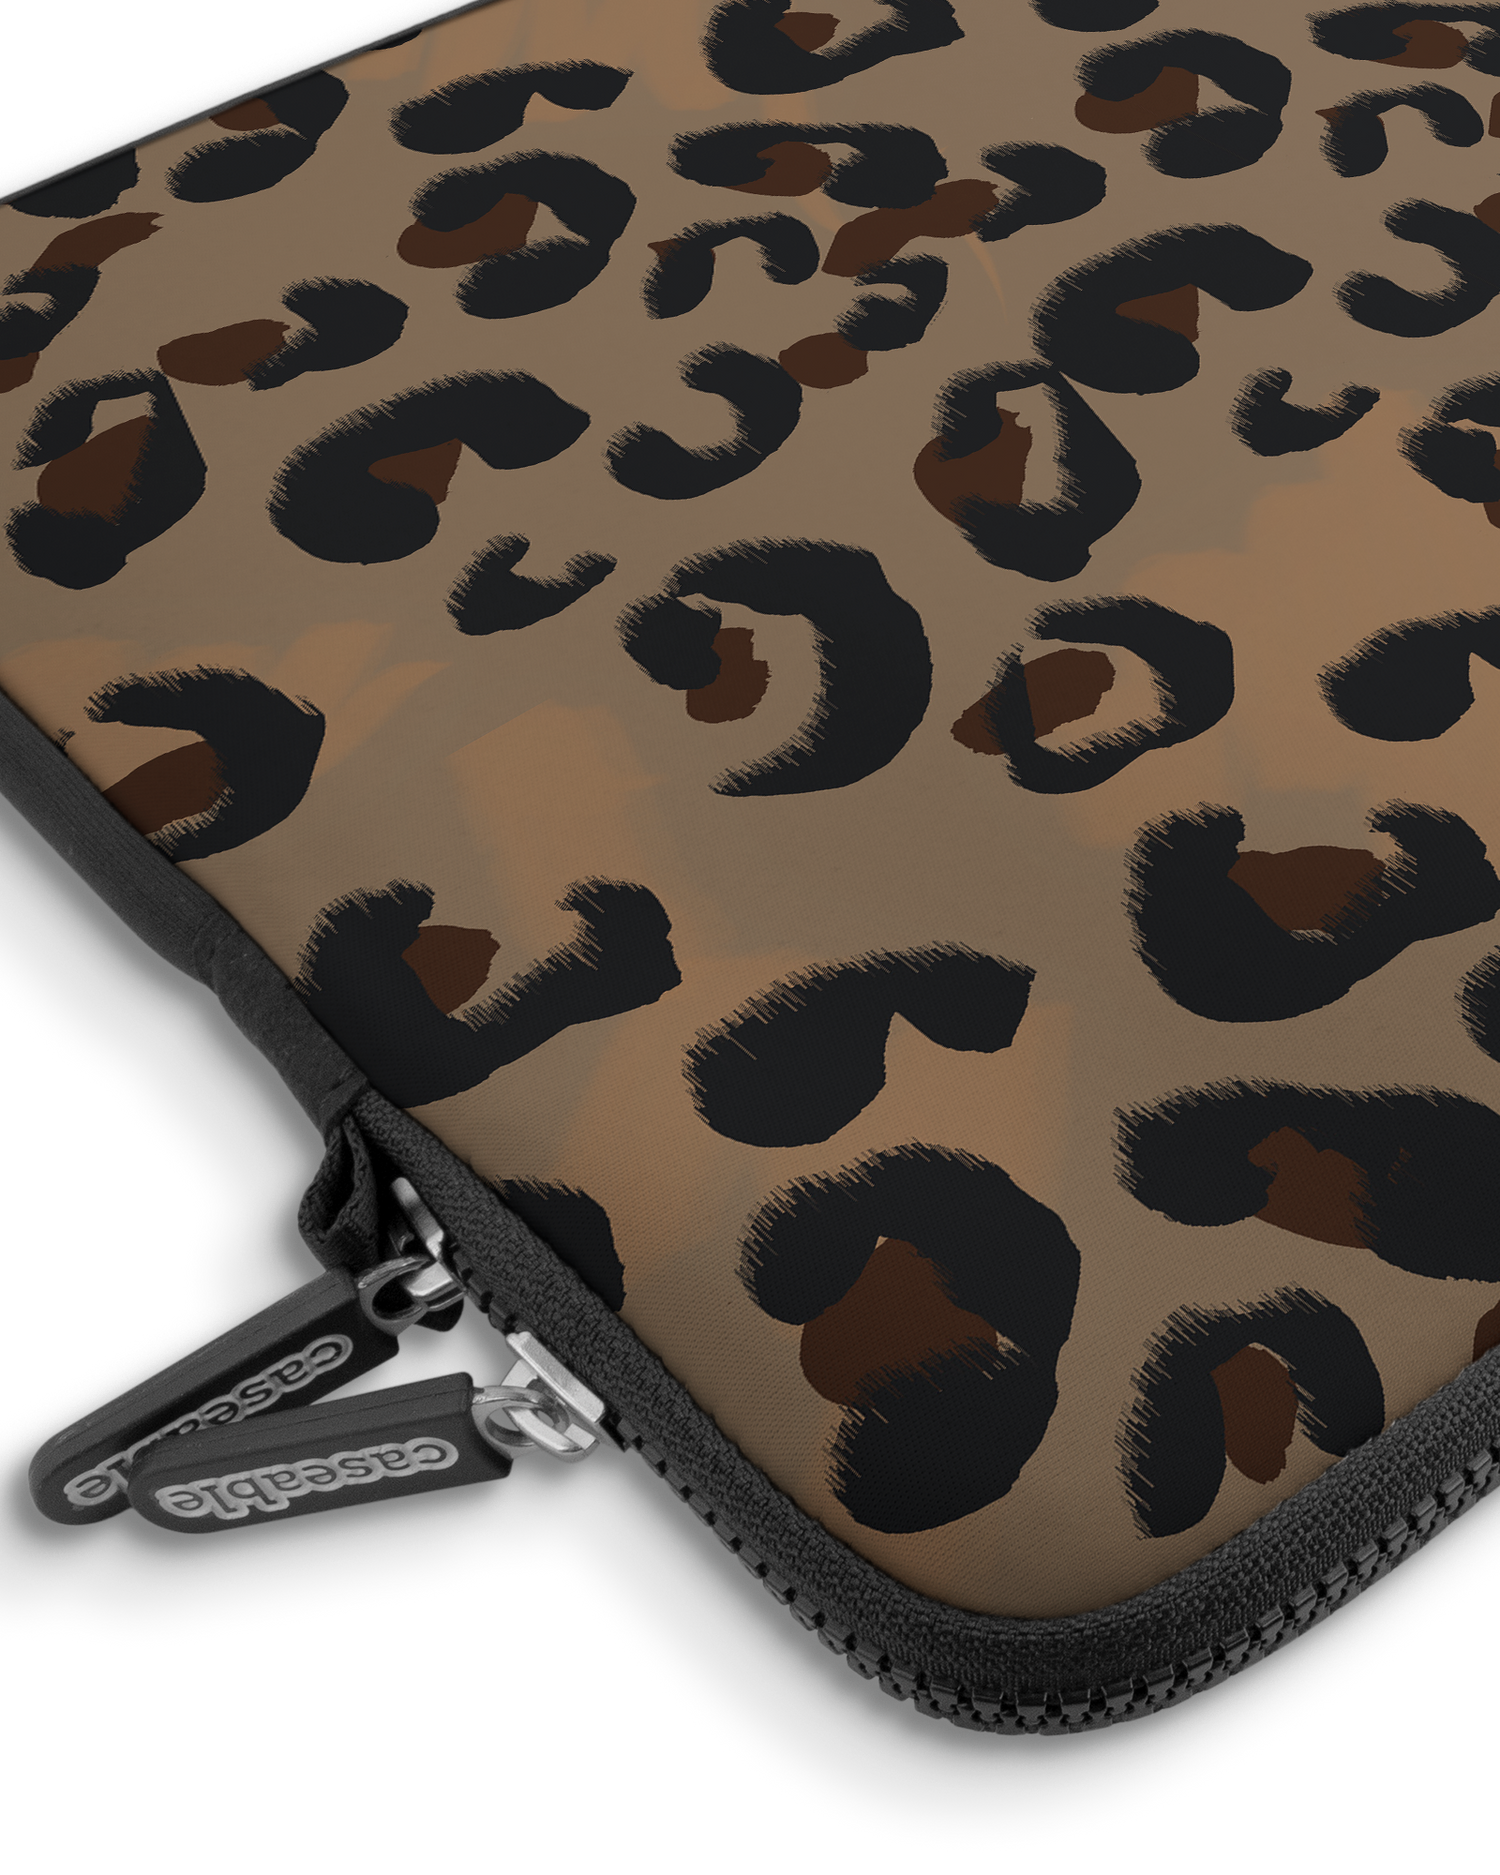 Leopard Repeat Premium Laptoptasche 15 Zoll mit Gerät im Inneren